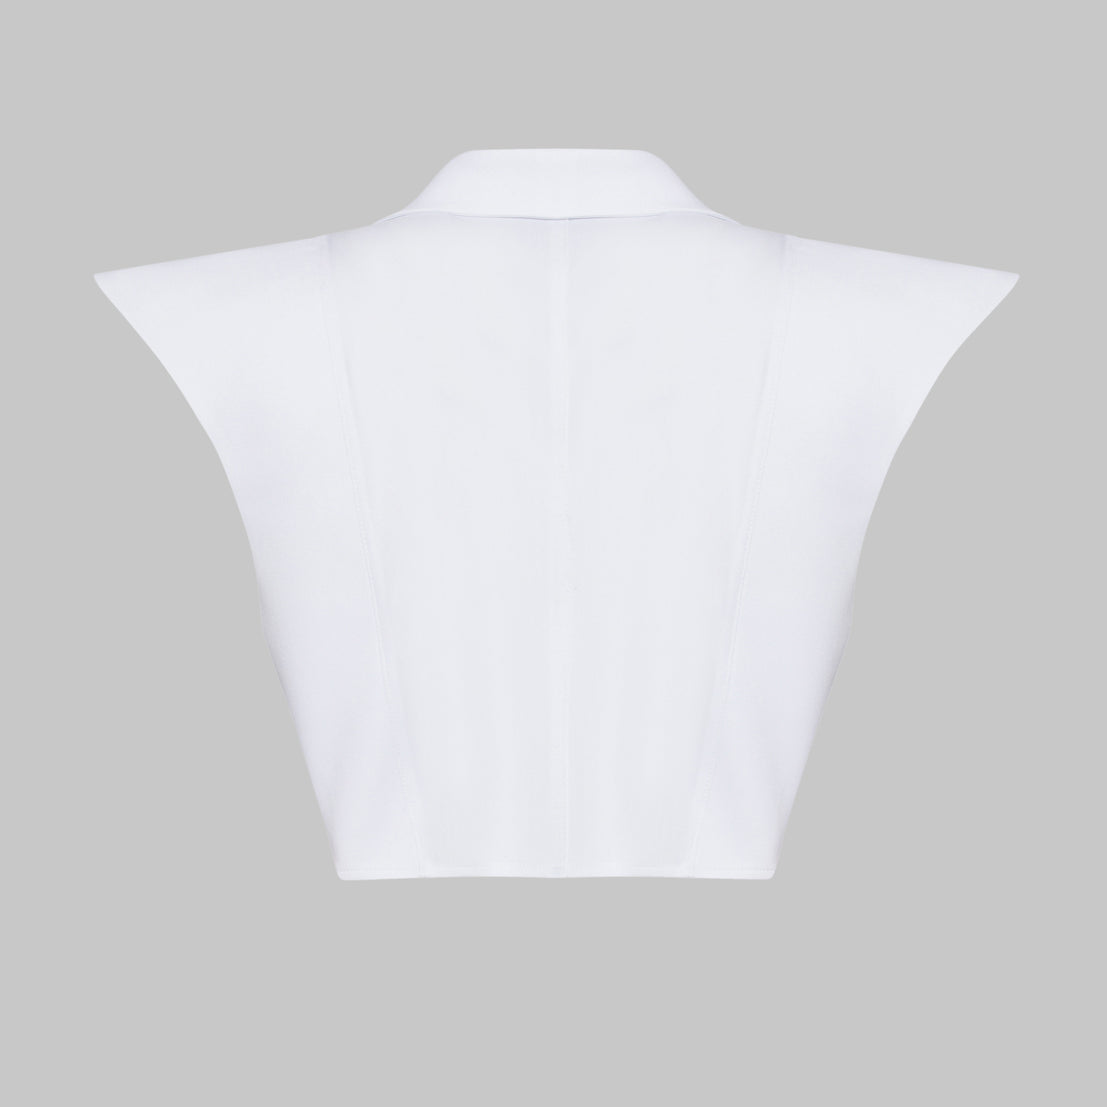 White Long Collar Shirt
